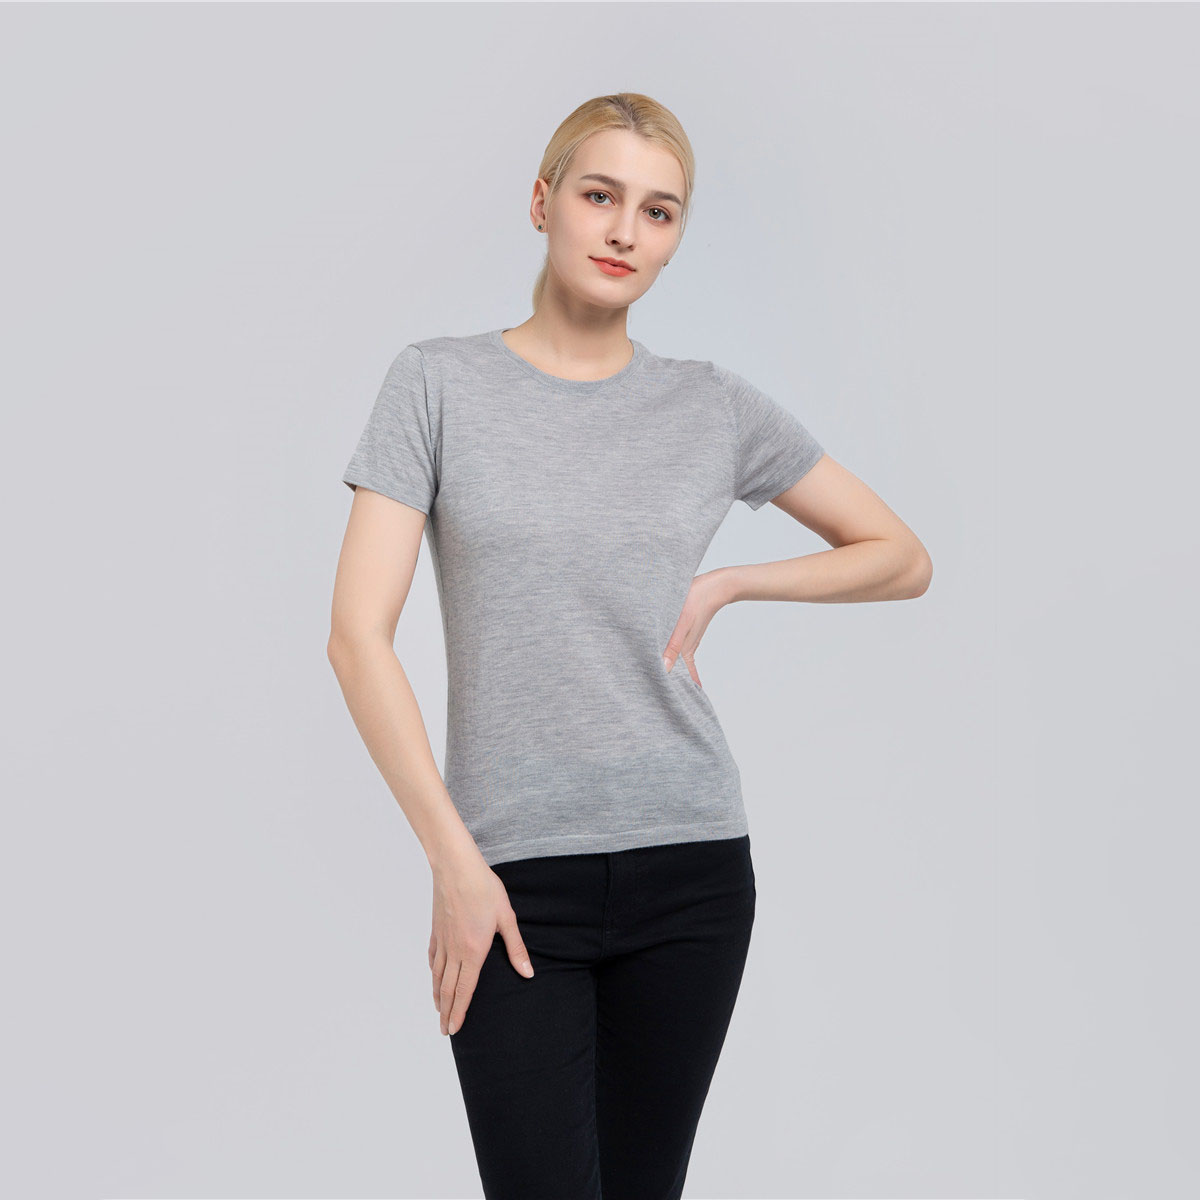 छोटी बाजू वाली फाइन गेज वाली महिलाओं की टी-शर्ट SFC-541S-16